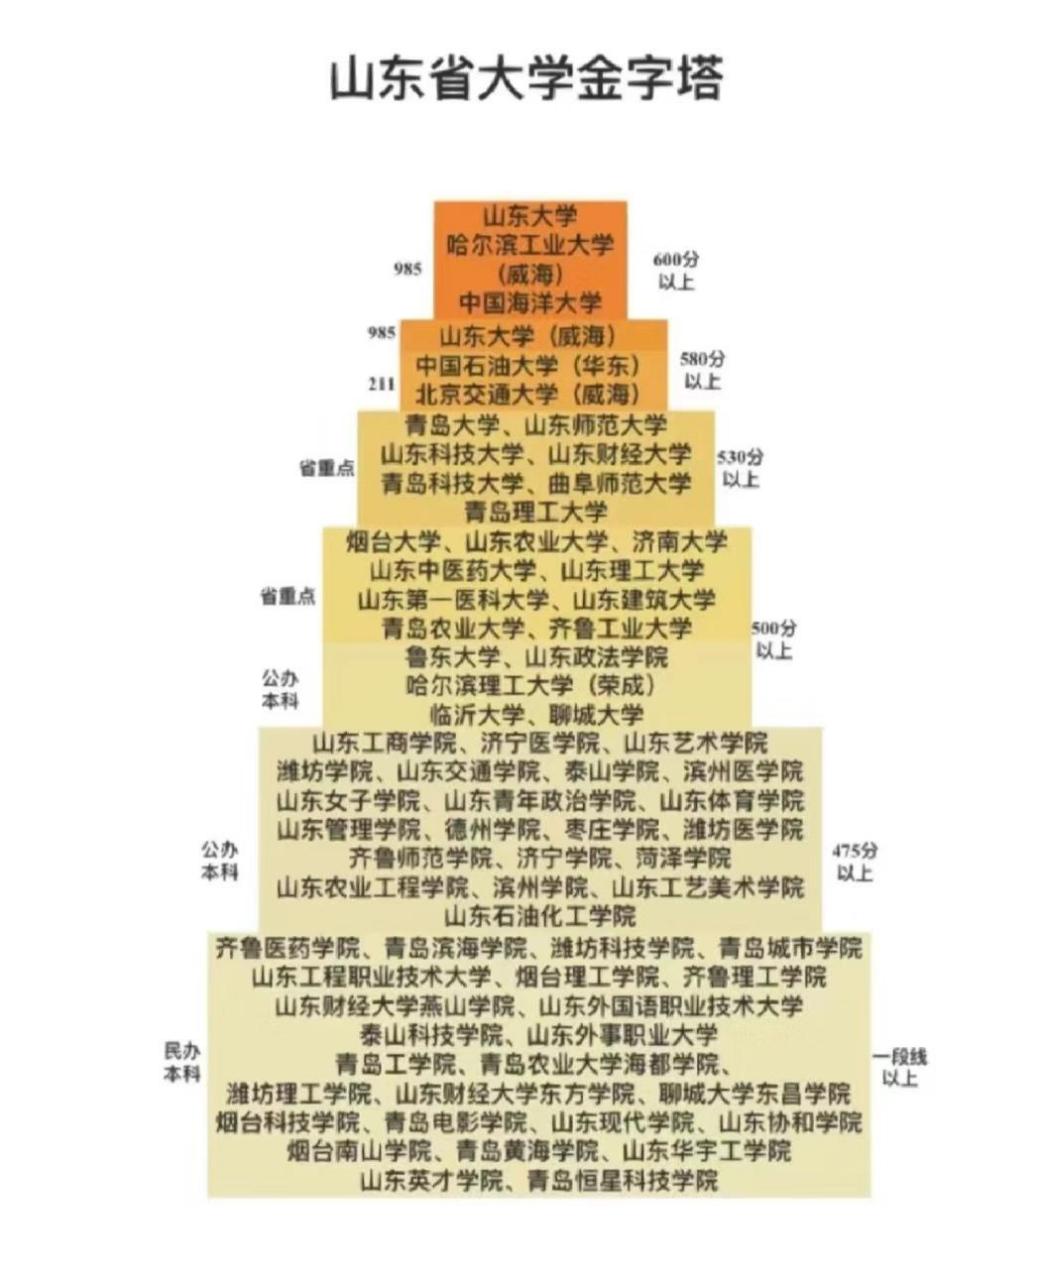 黑龙江高校金字塔图片